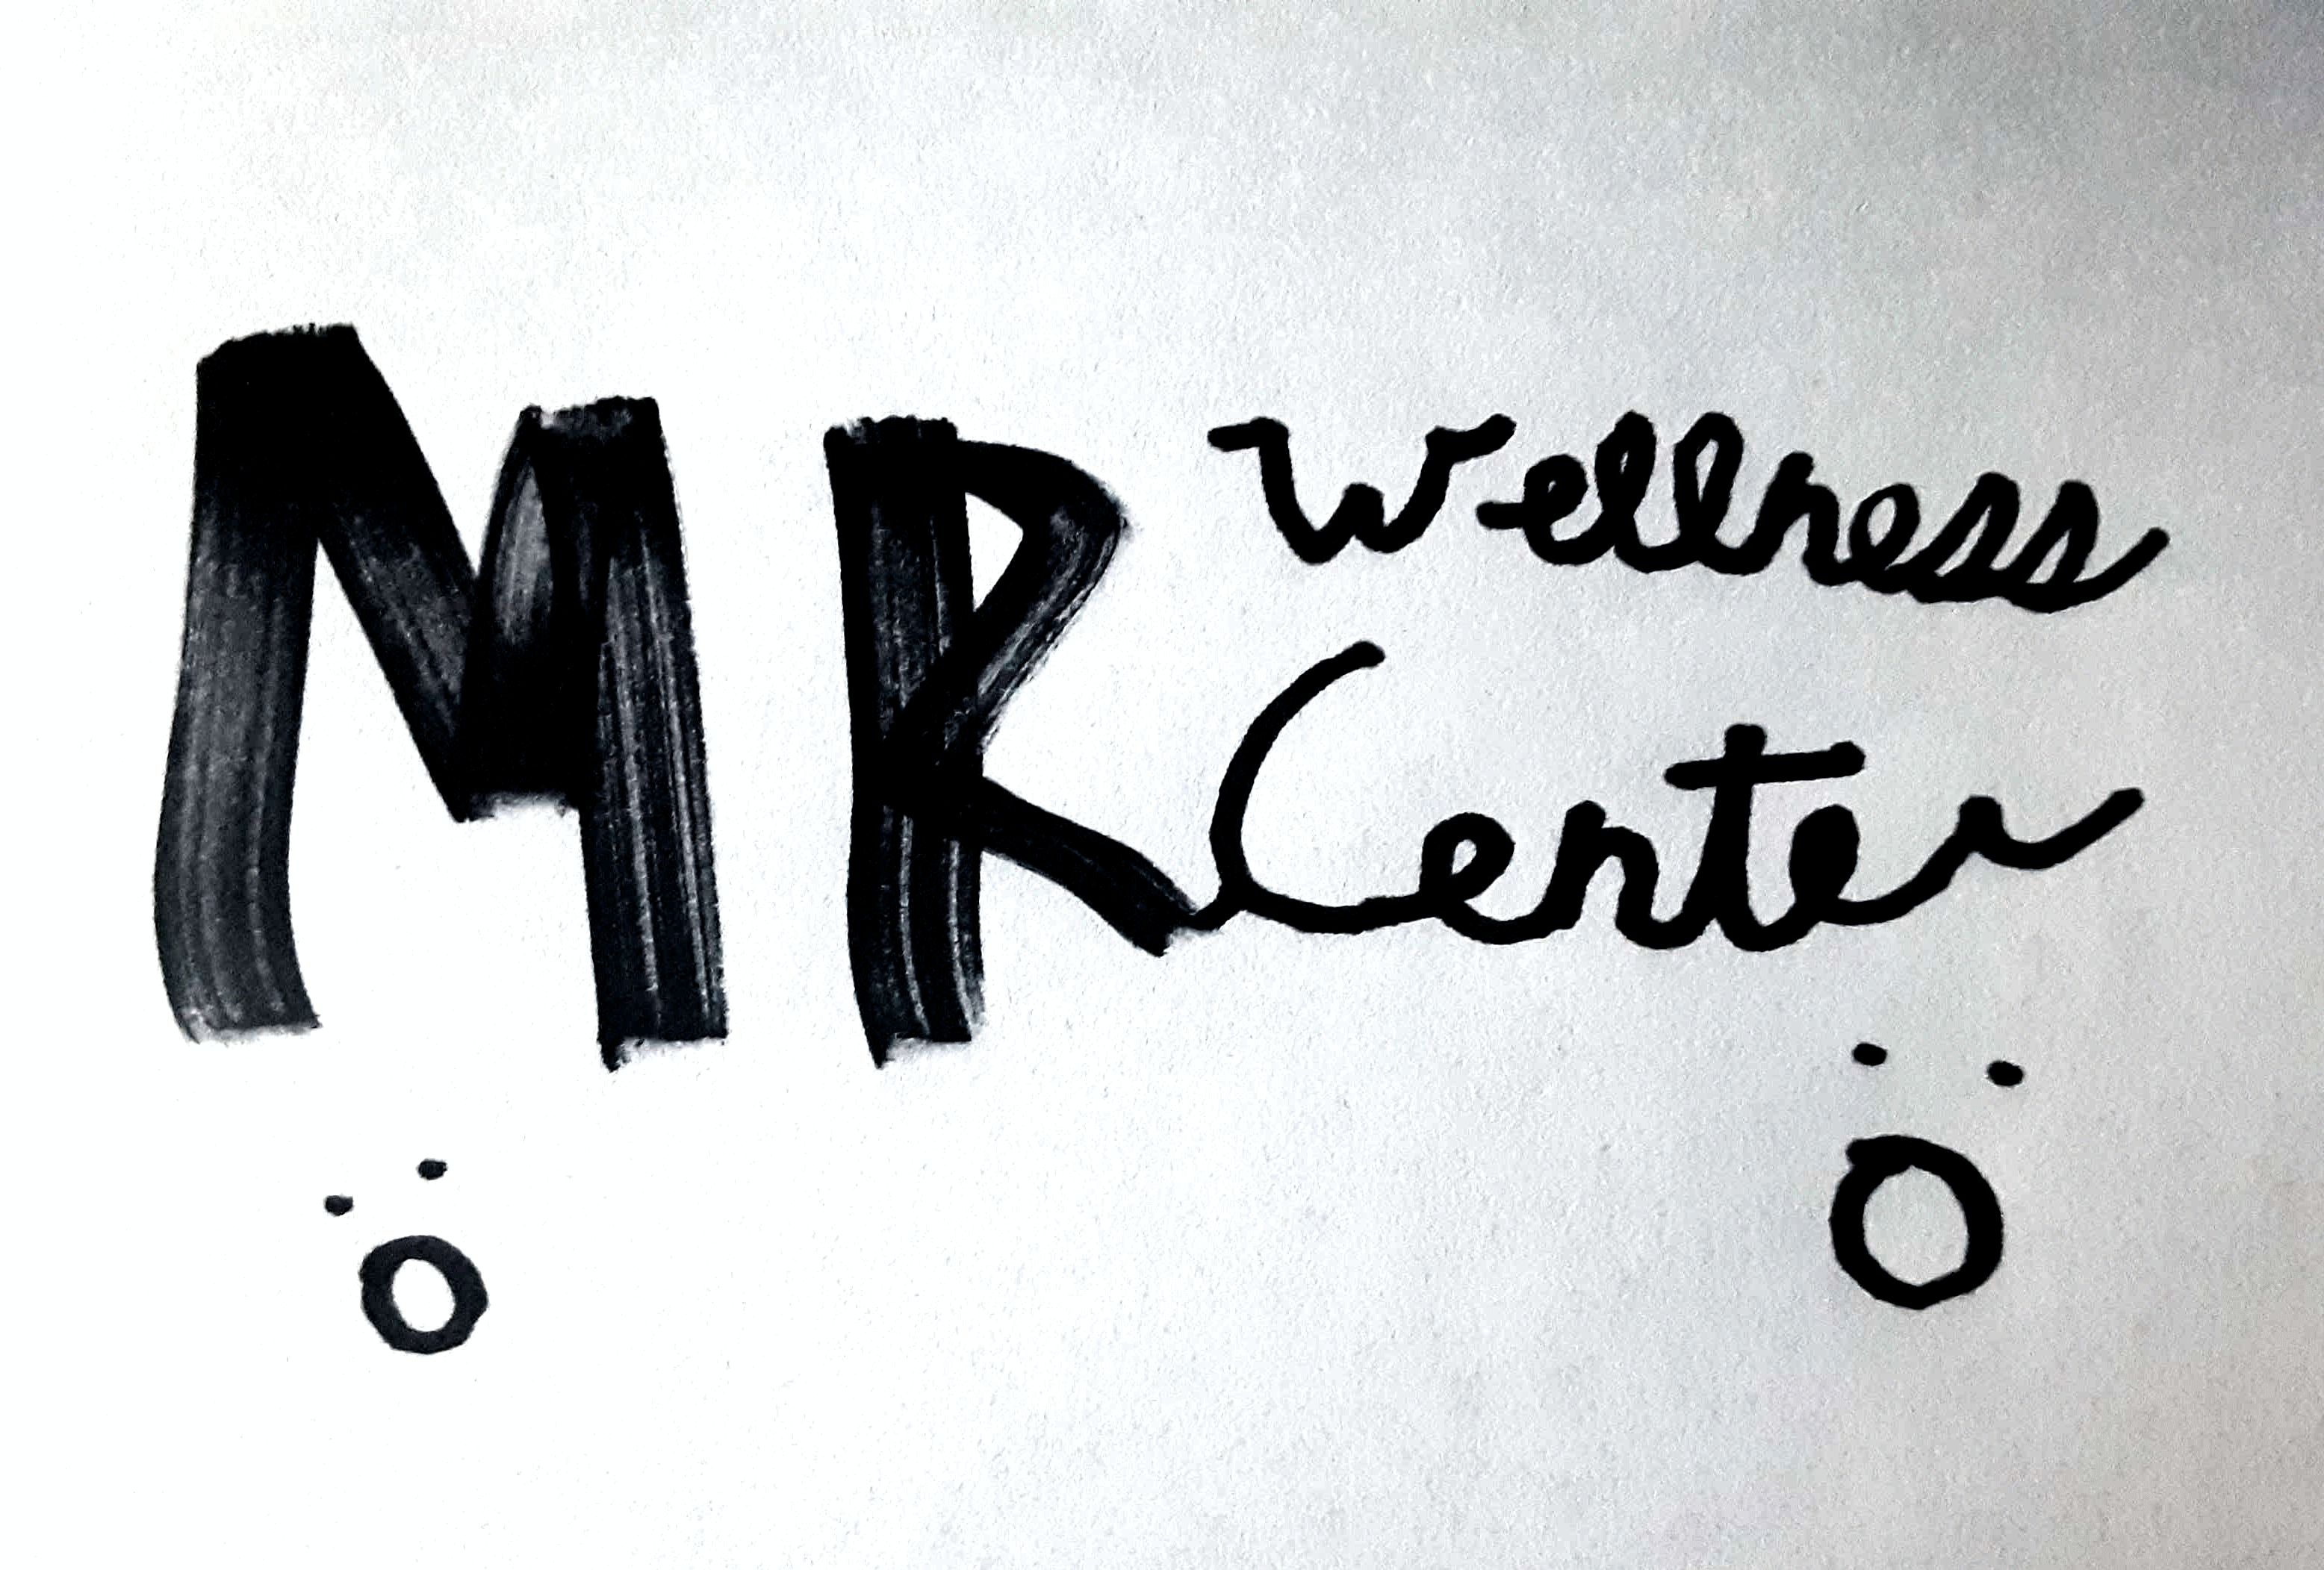 Mr. Wellness Center